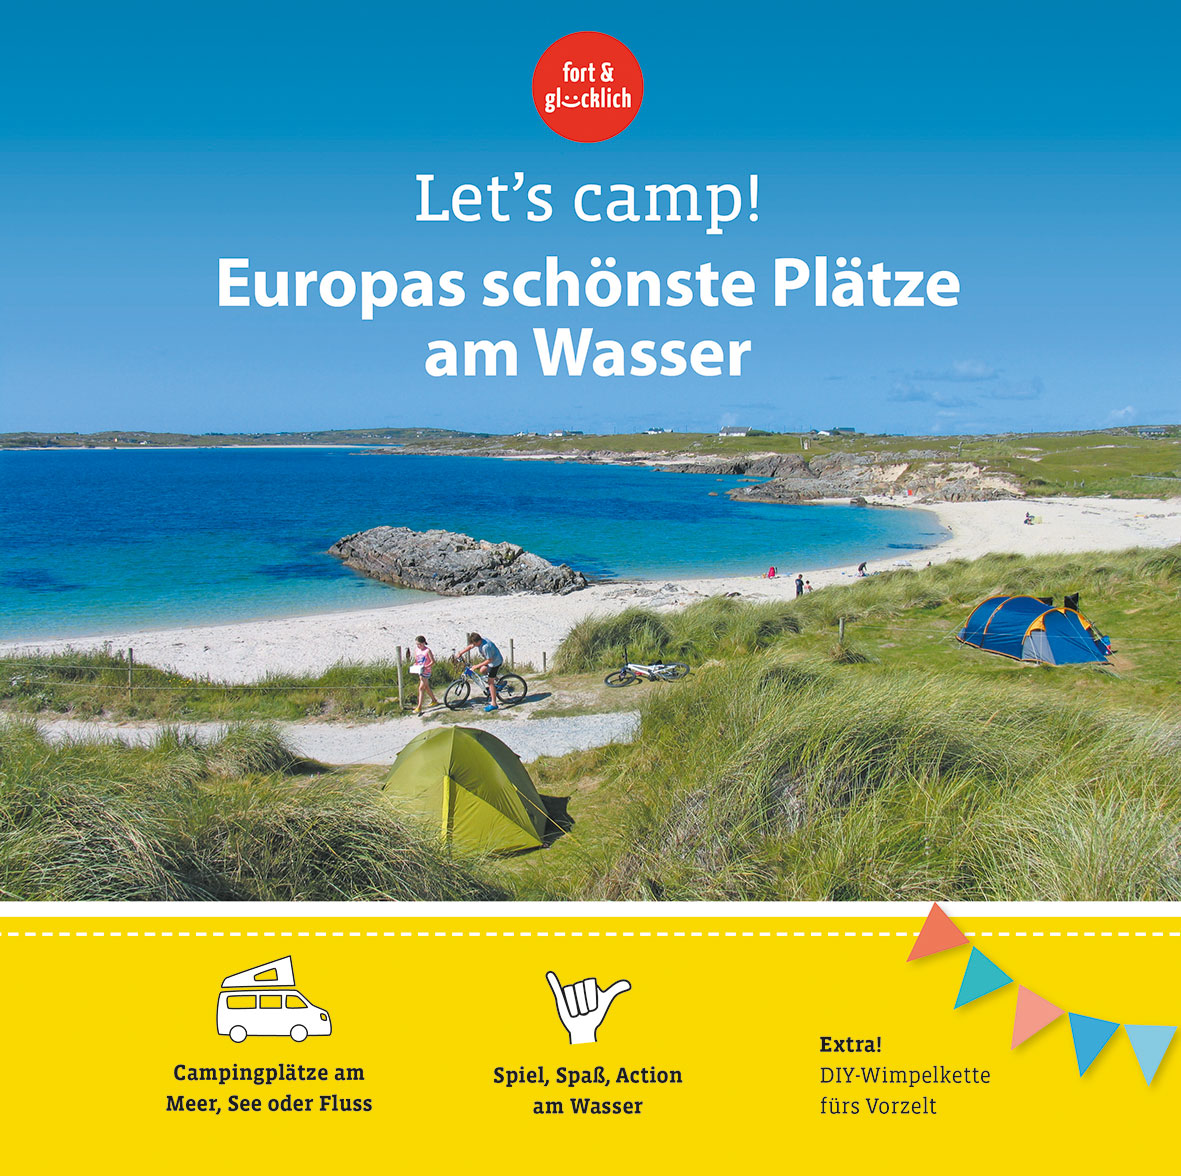 Let‘s camp! - Europas schönste Plätze am Wasser